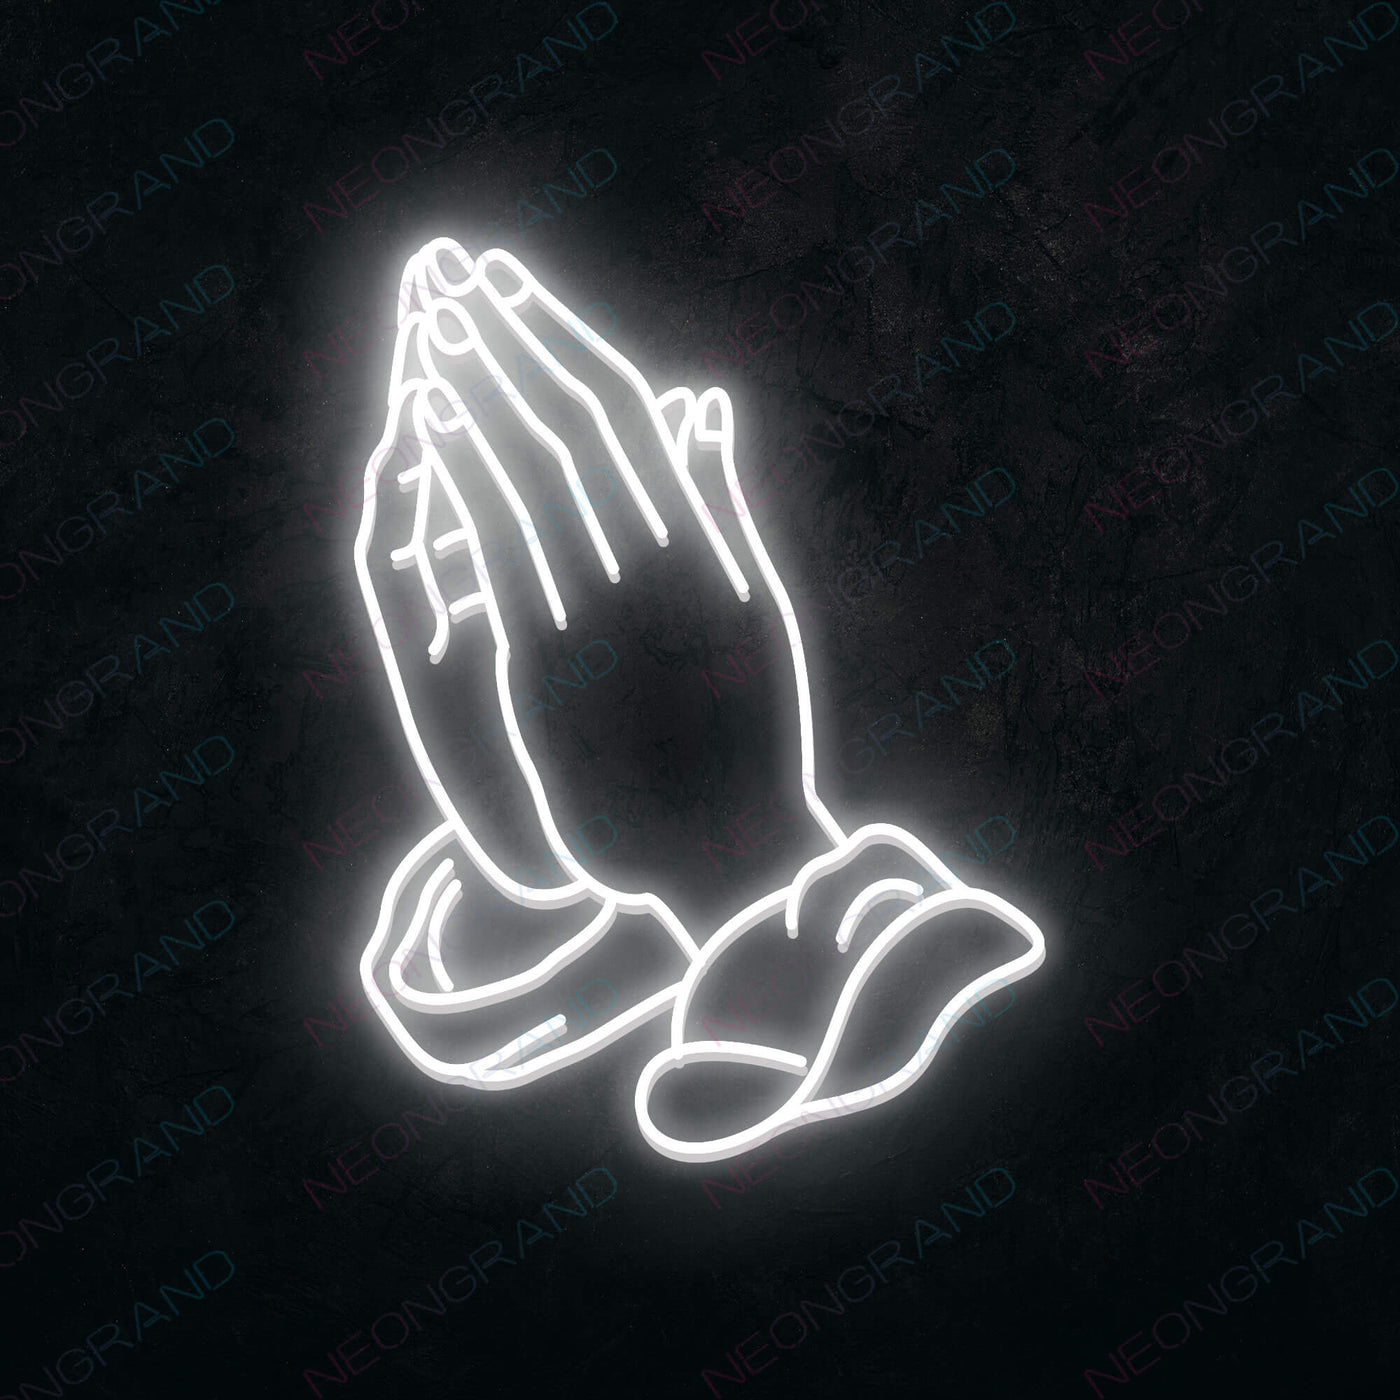 Neon Praying Hands Sign Led Light white